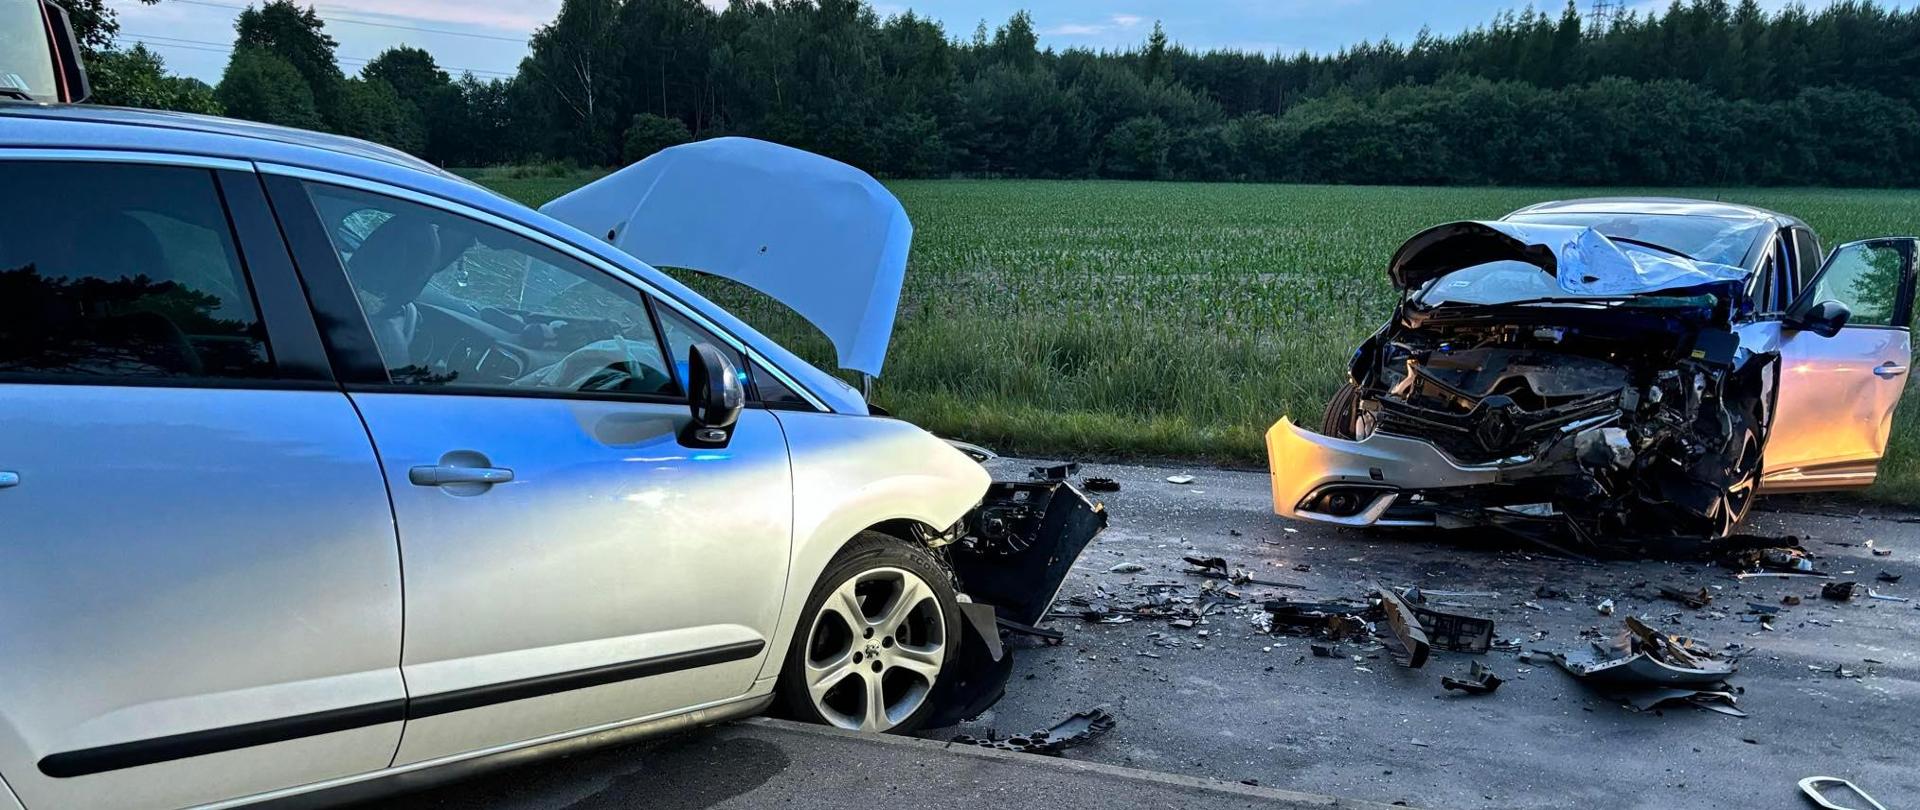 Zdjęcie przedstawia dwa rozbite pojazdy z uszkodzonymi przodami. Samochody stoją na drodze skierowane przodami do siebie.